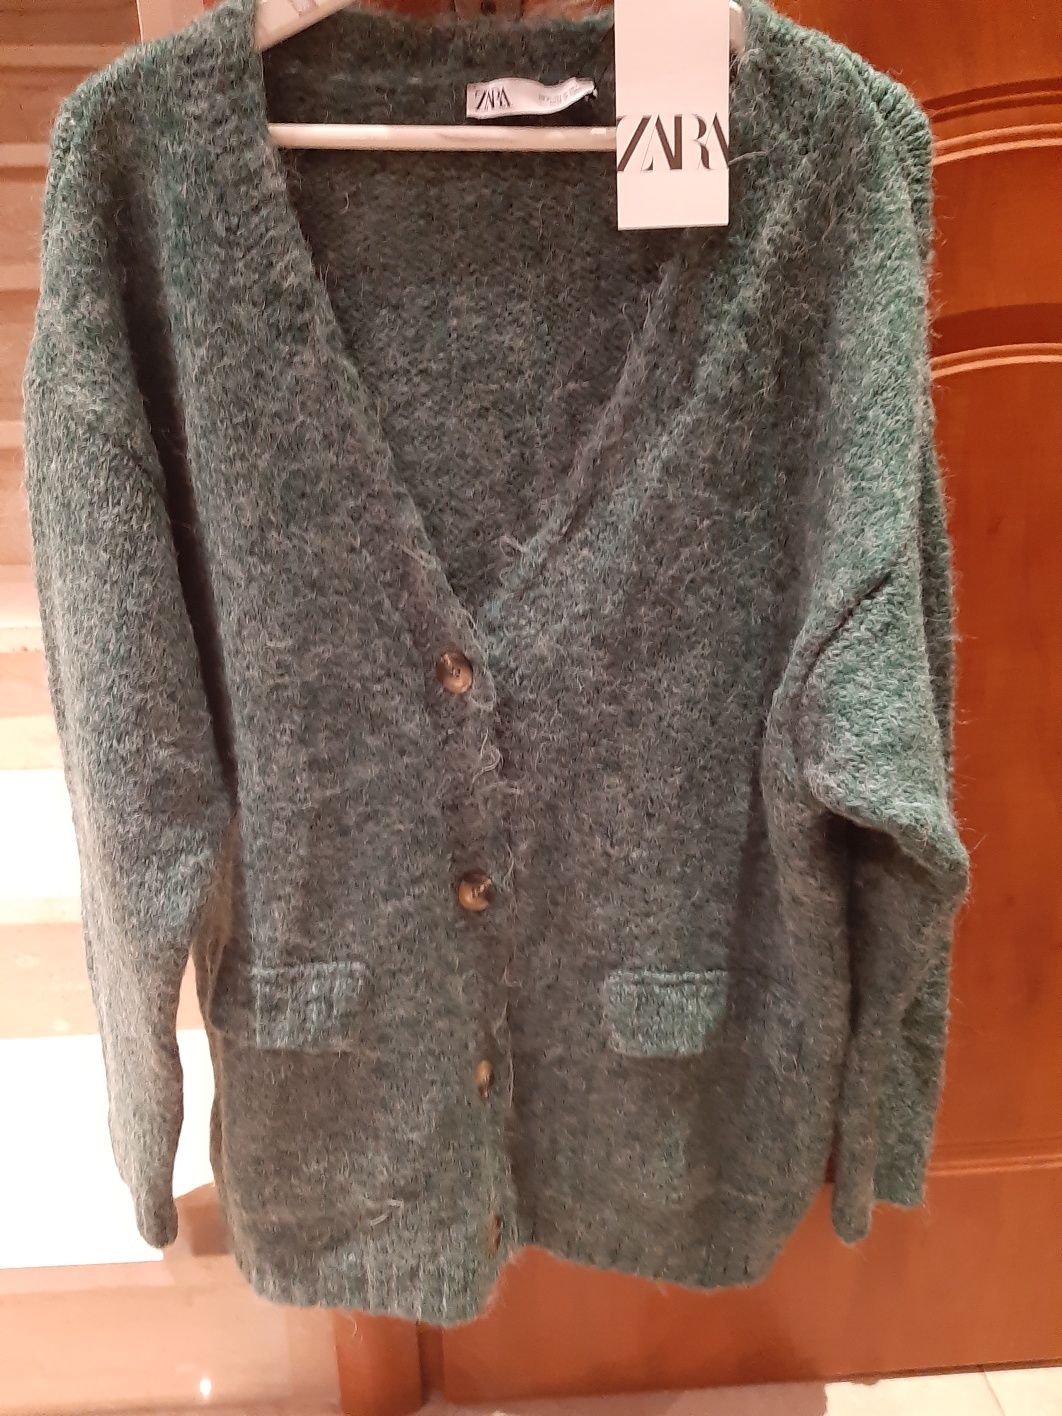 Sweterek zara XL zielono szary sweter damski tunika długi rozpinany tk